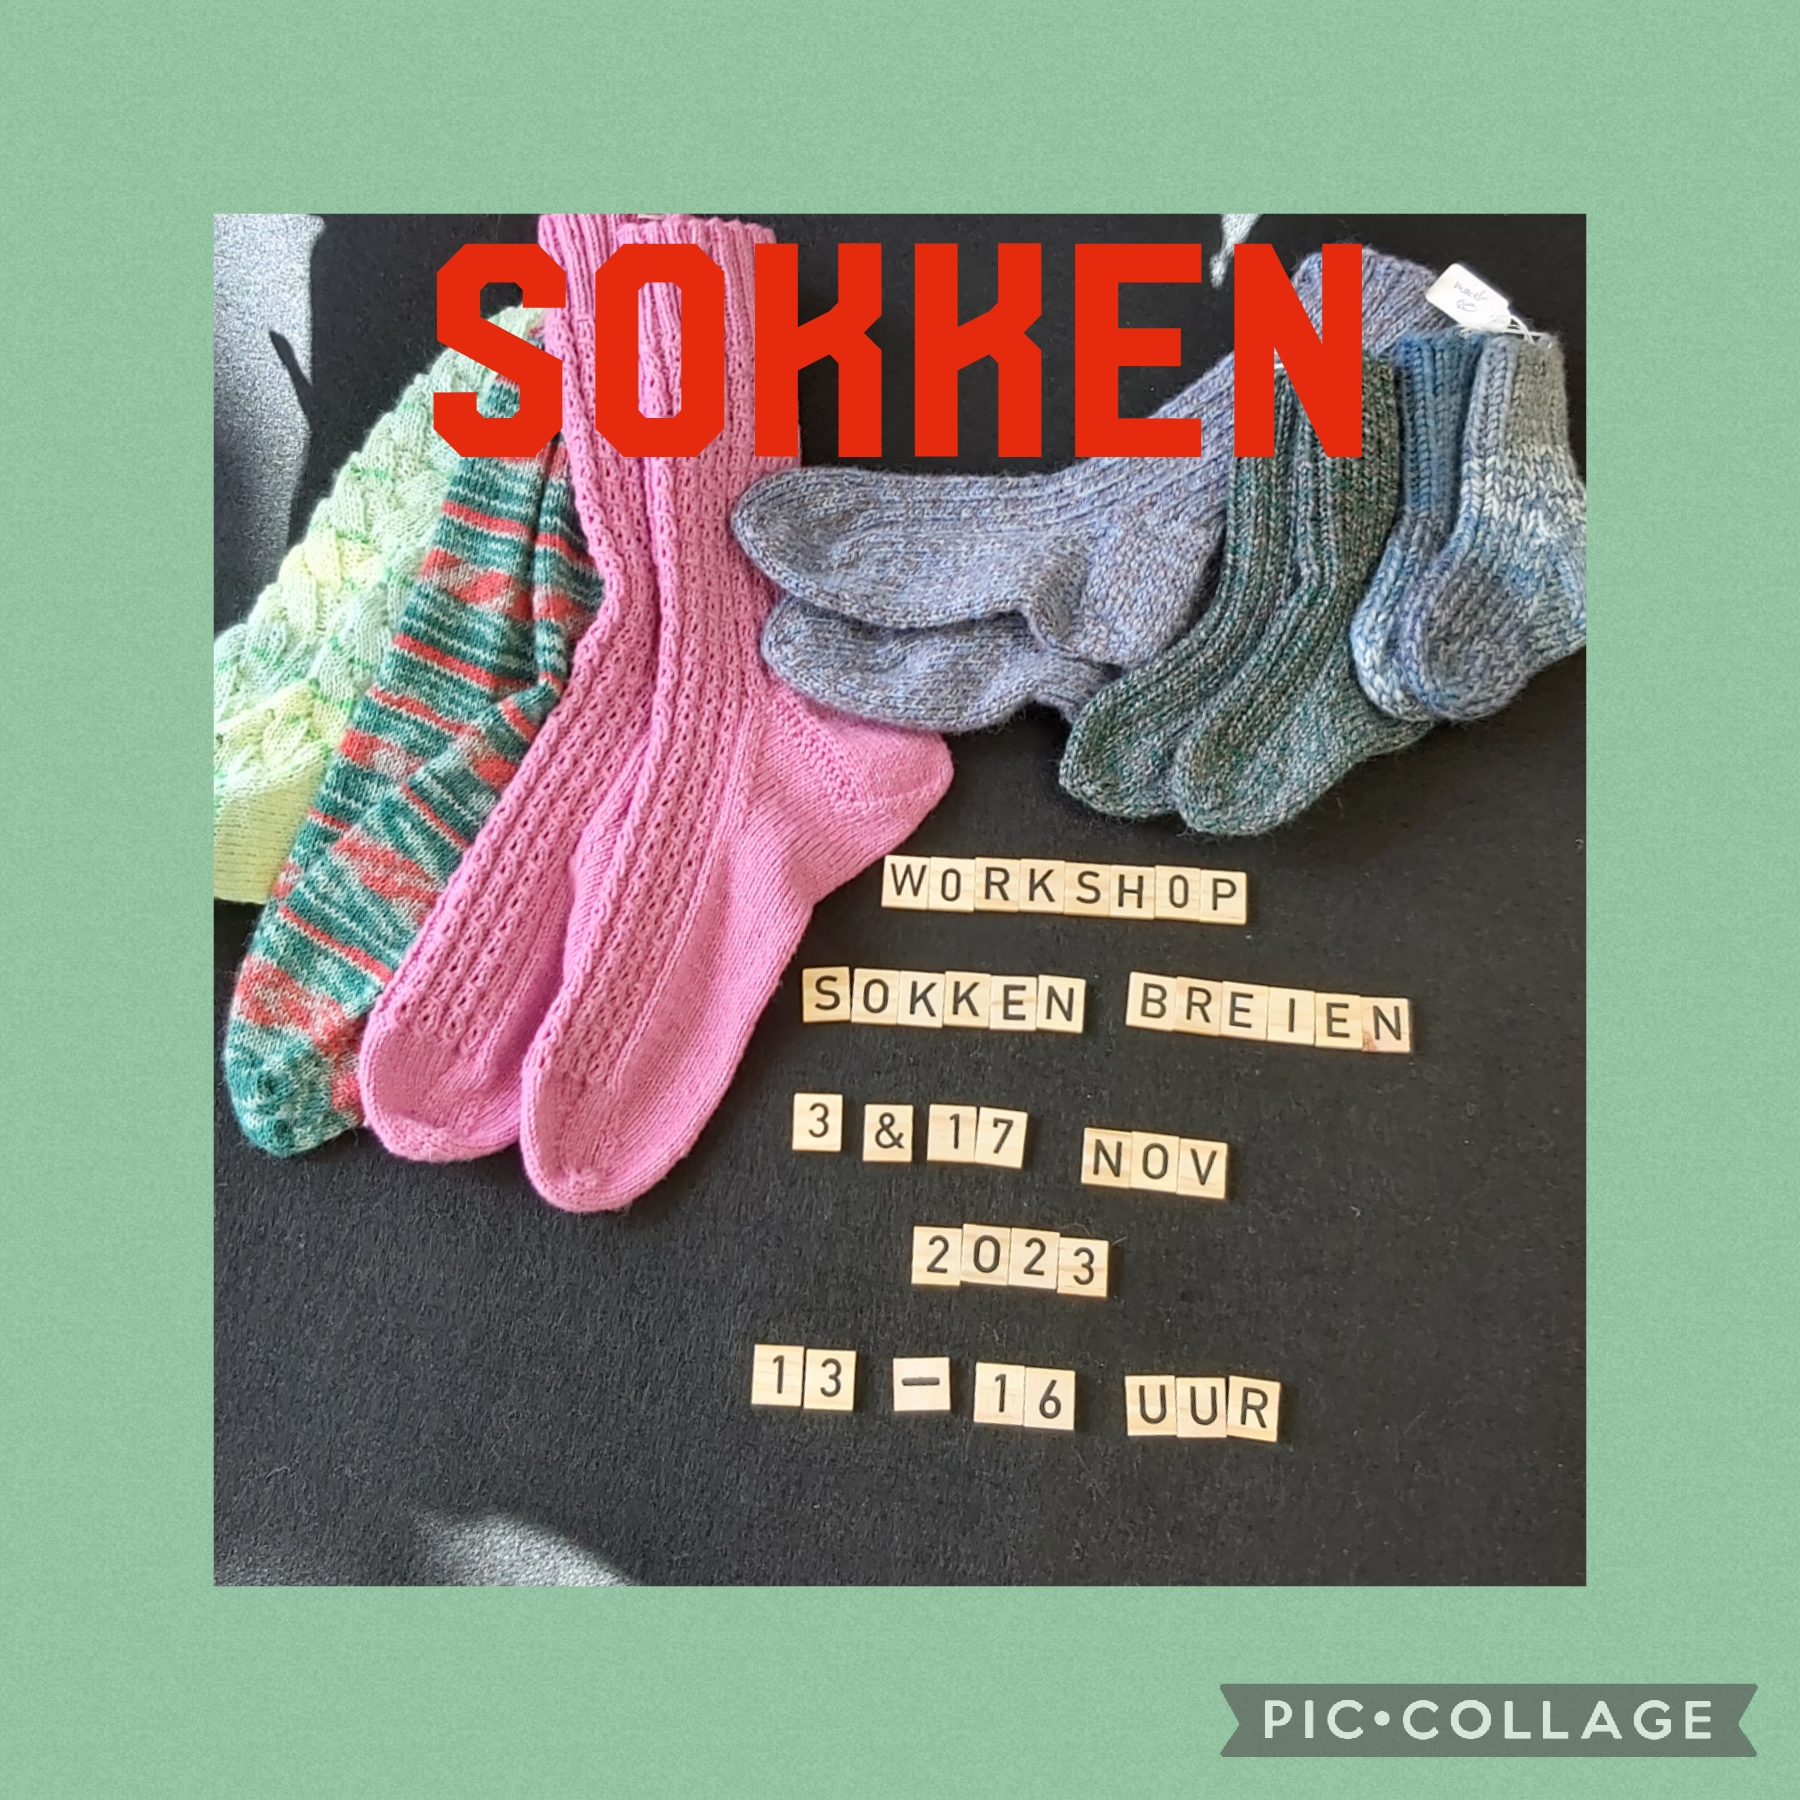 sokken breien leren 3 en 17 nov